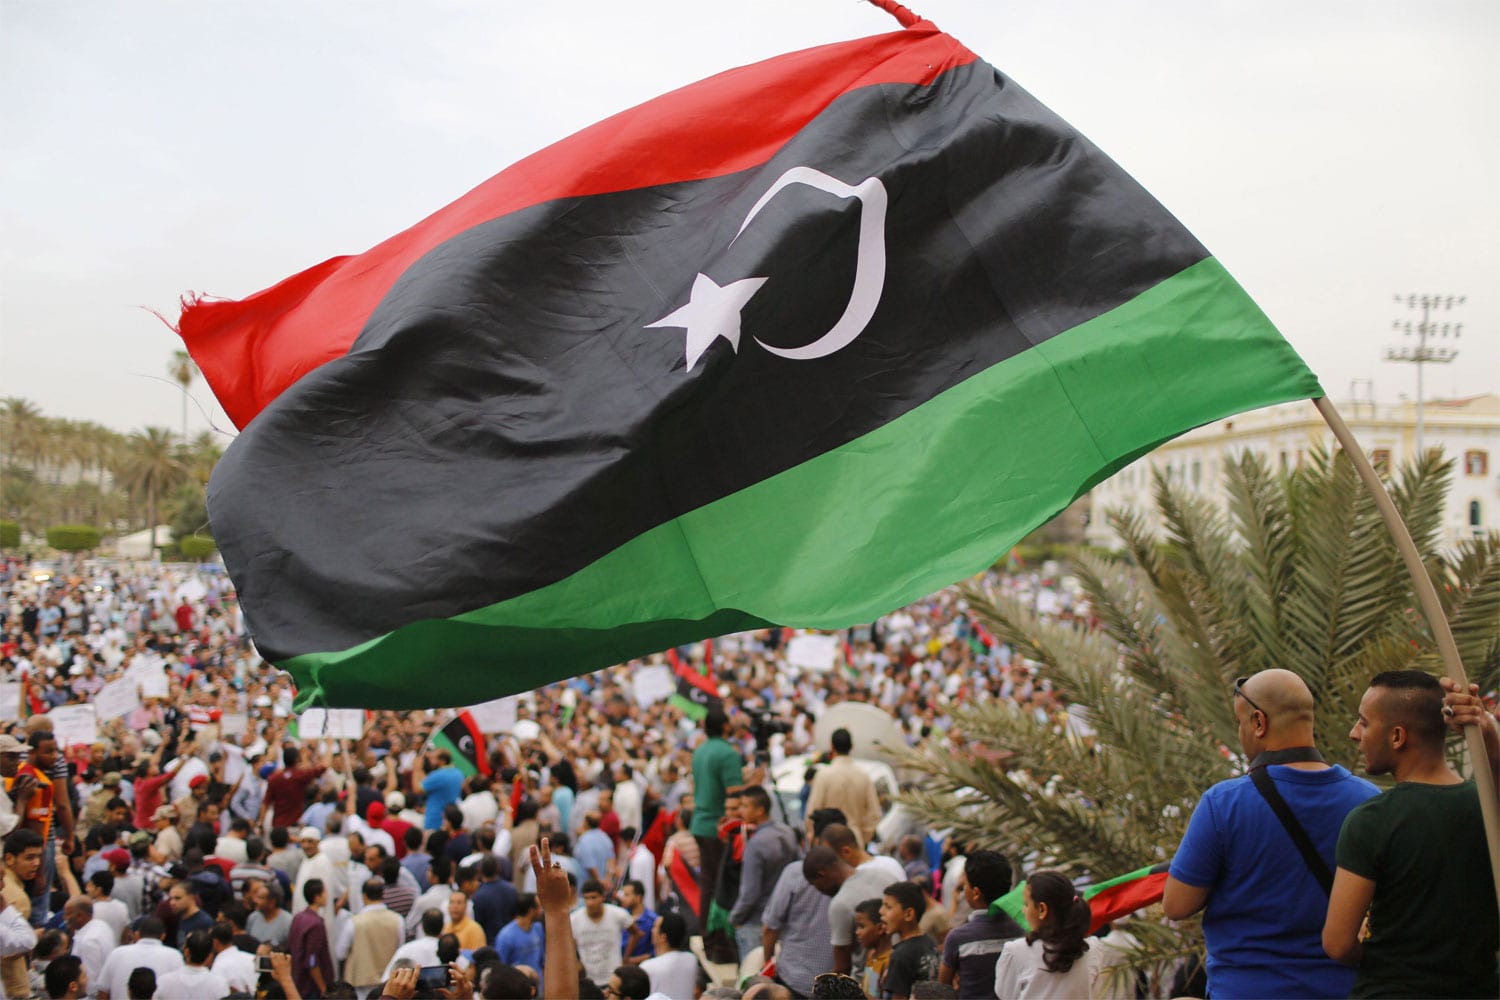 27 Dicembre 2021 – Caos Libia, Parlamento non decide su nuova data elezioni, ma si pensa a rinvio di sei mesi. Somalia prossima alla guerra.